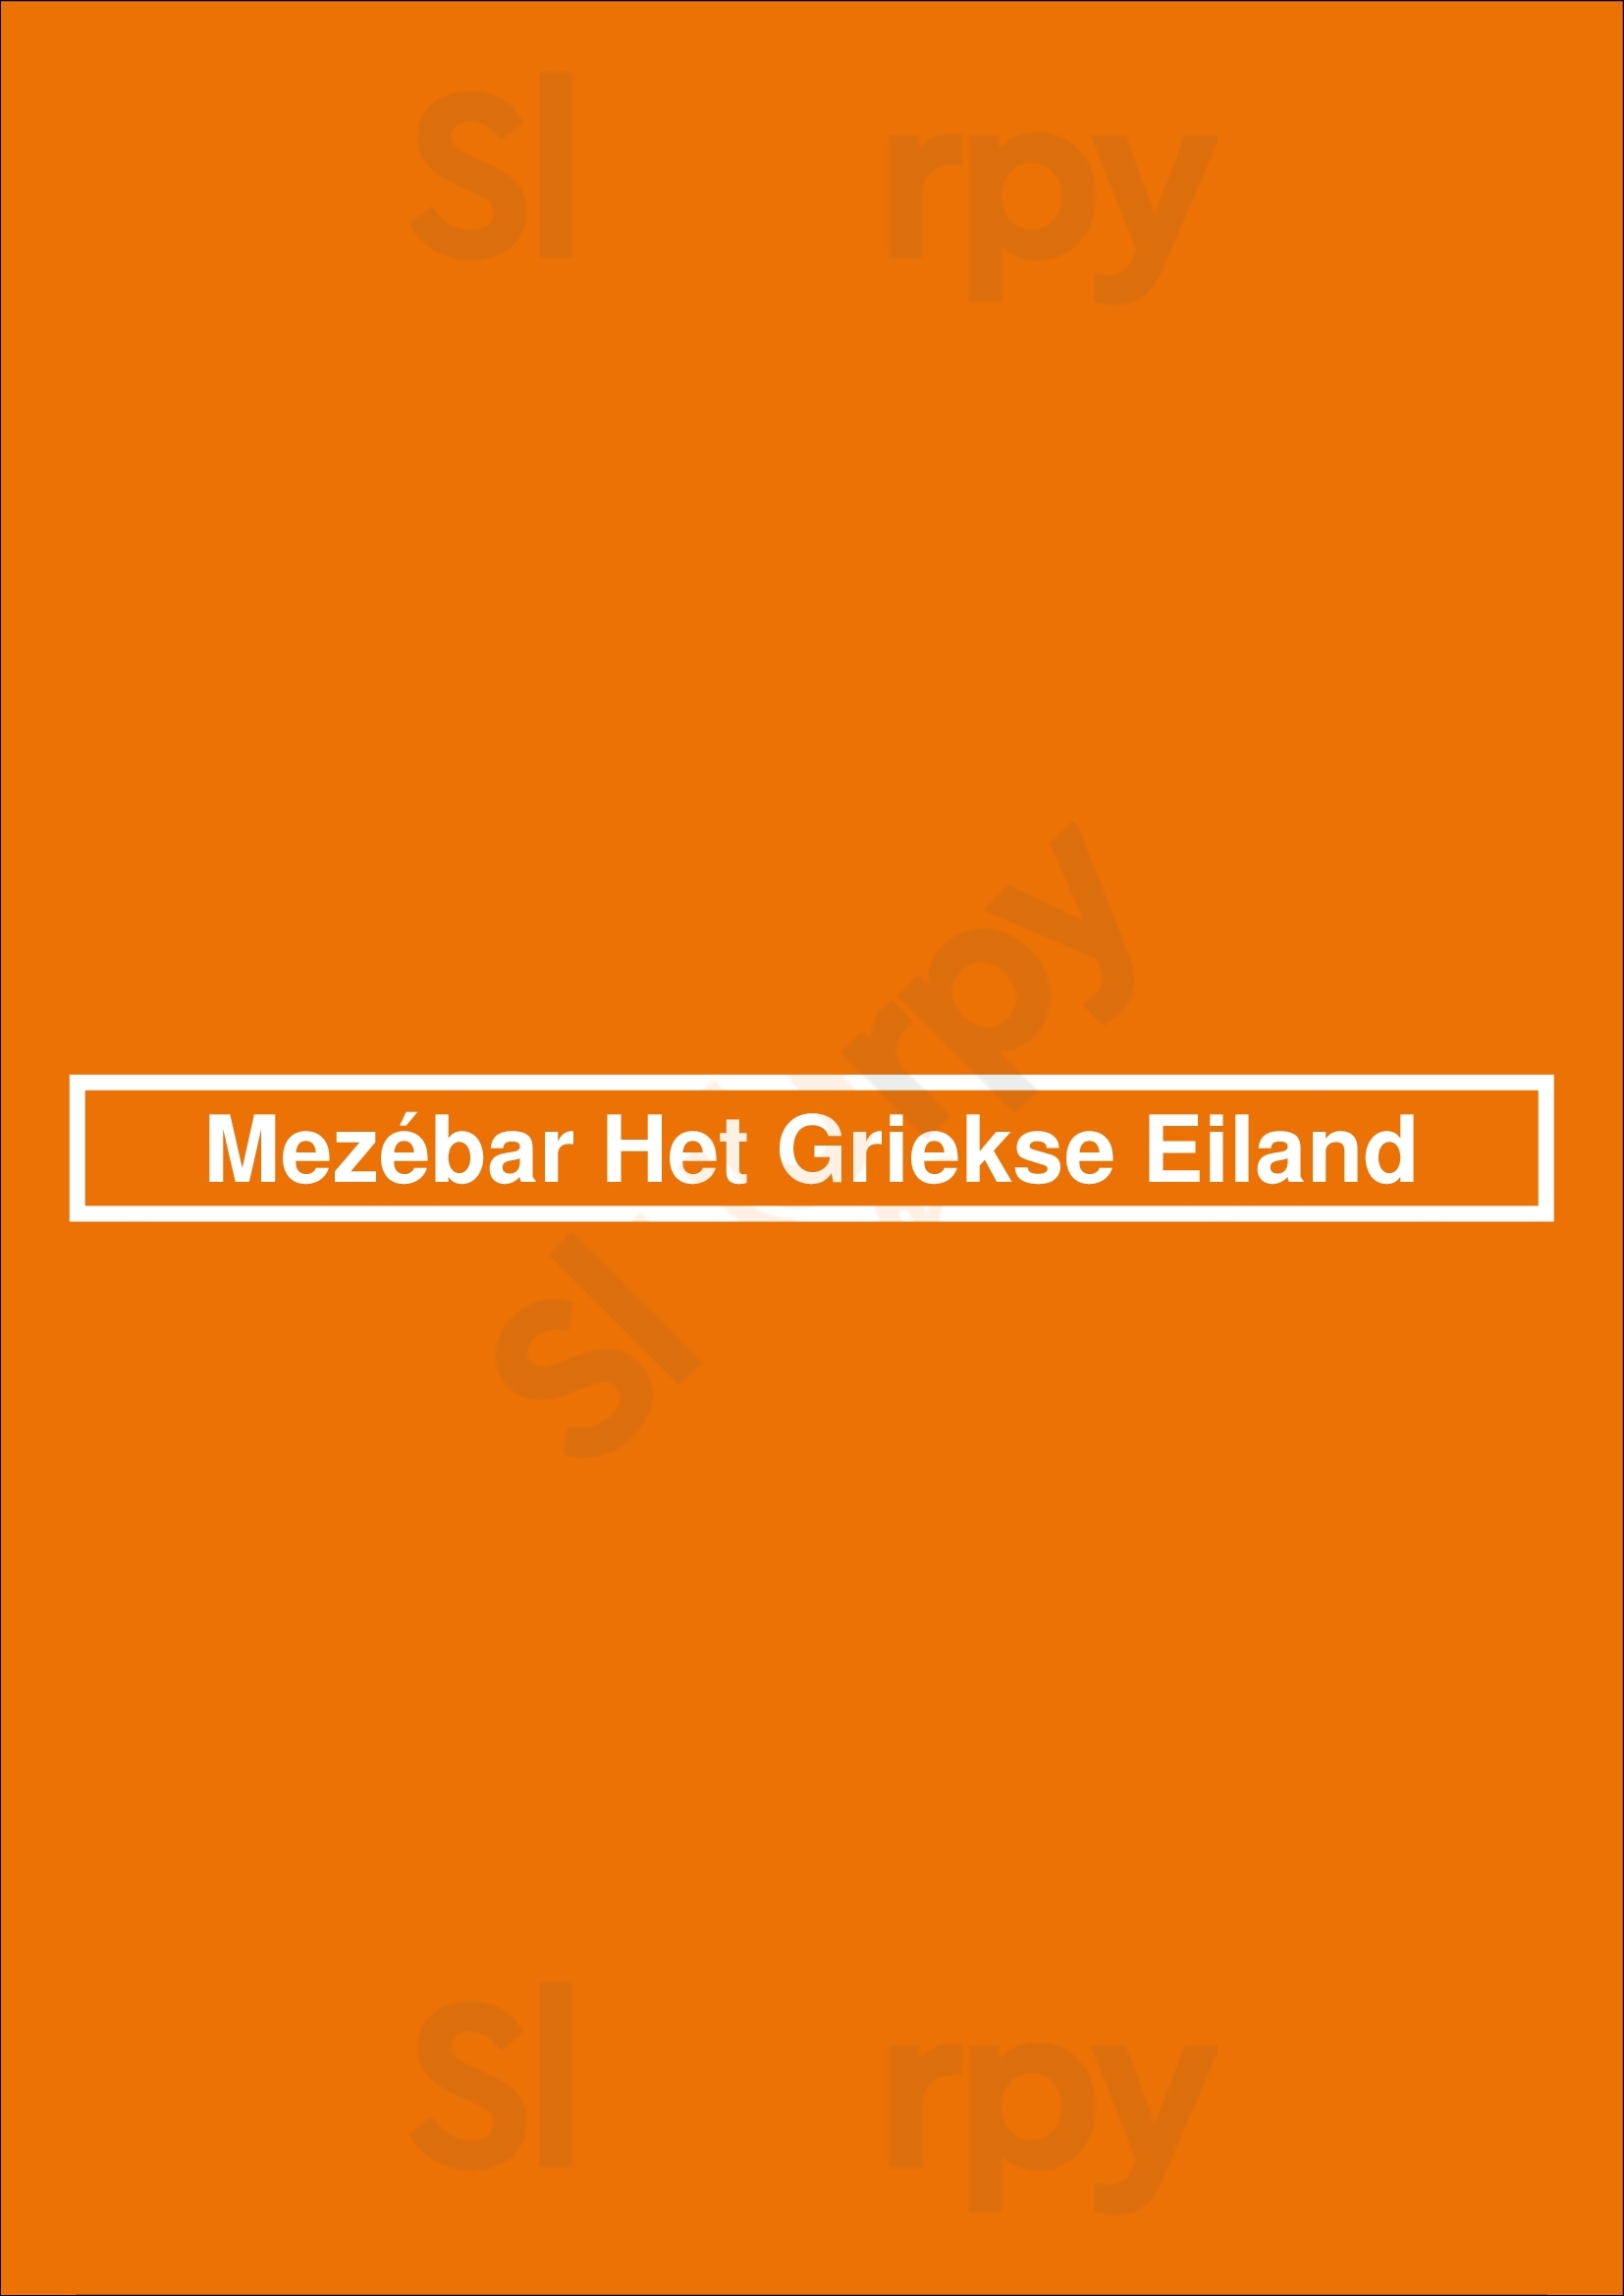 Mezébar Het Griekse Eiland Bussum Menu - 1